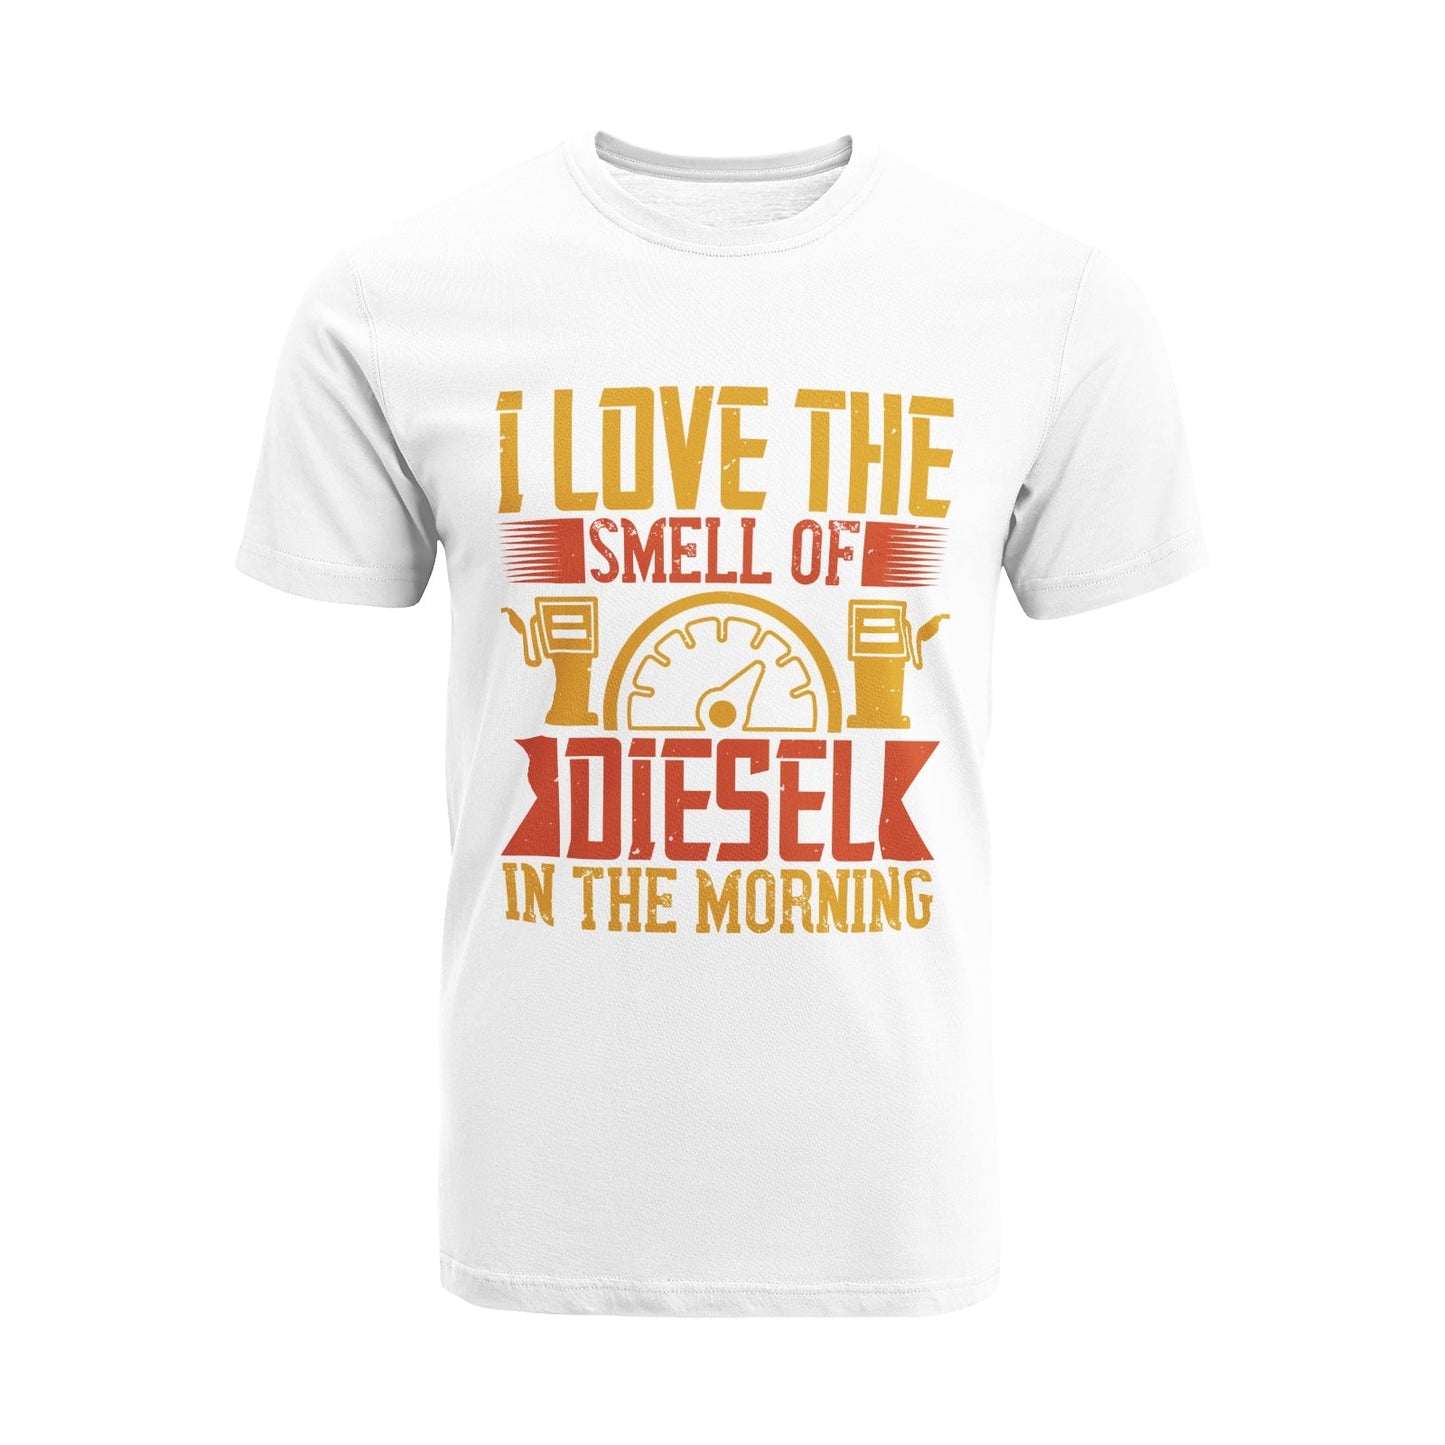 Unisex Short Sleeve Crew Neck Cotton Jersey T-Shirt TRUCK 16